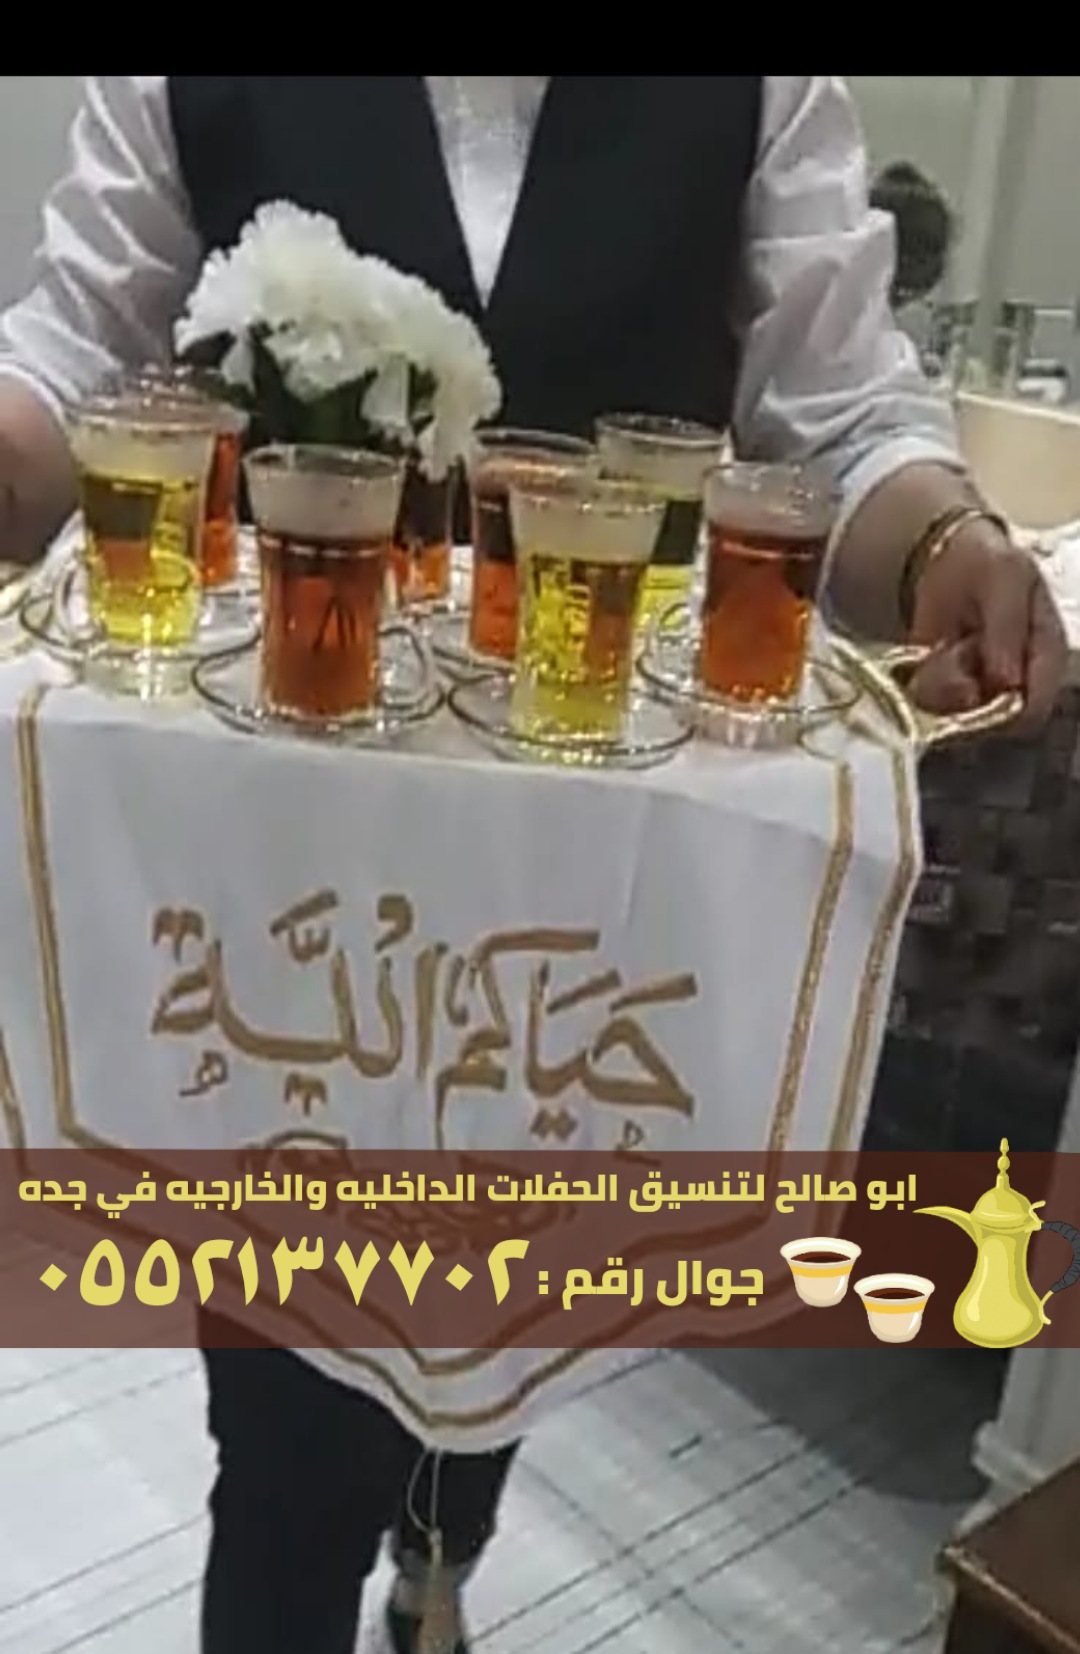 صبابين قهوة و قهوجي ضيافه في جدة,0552137702